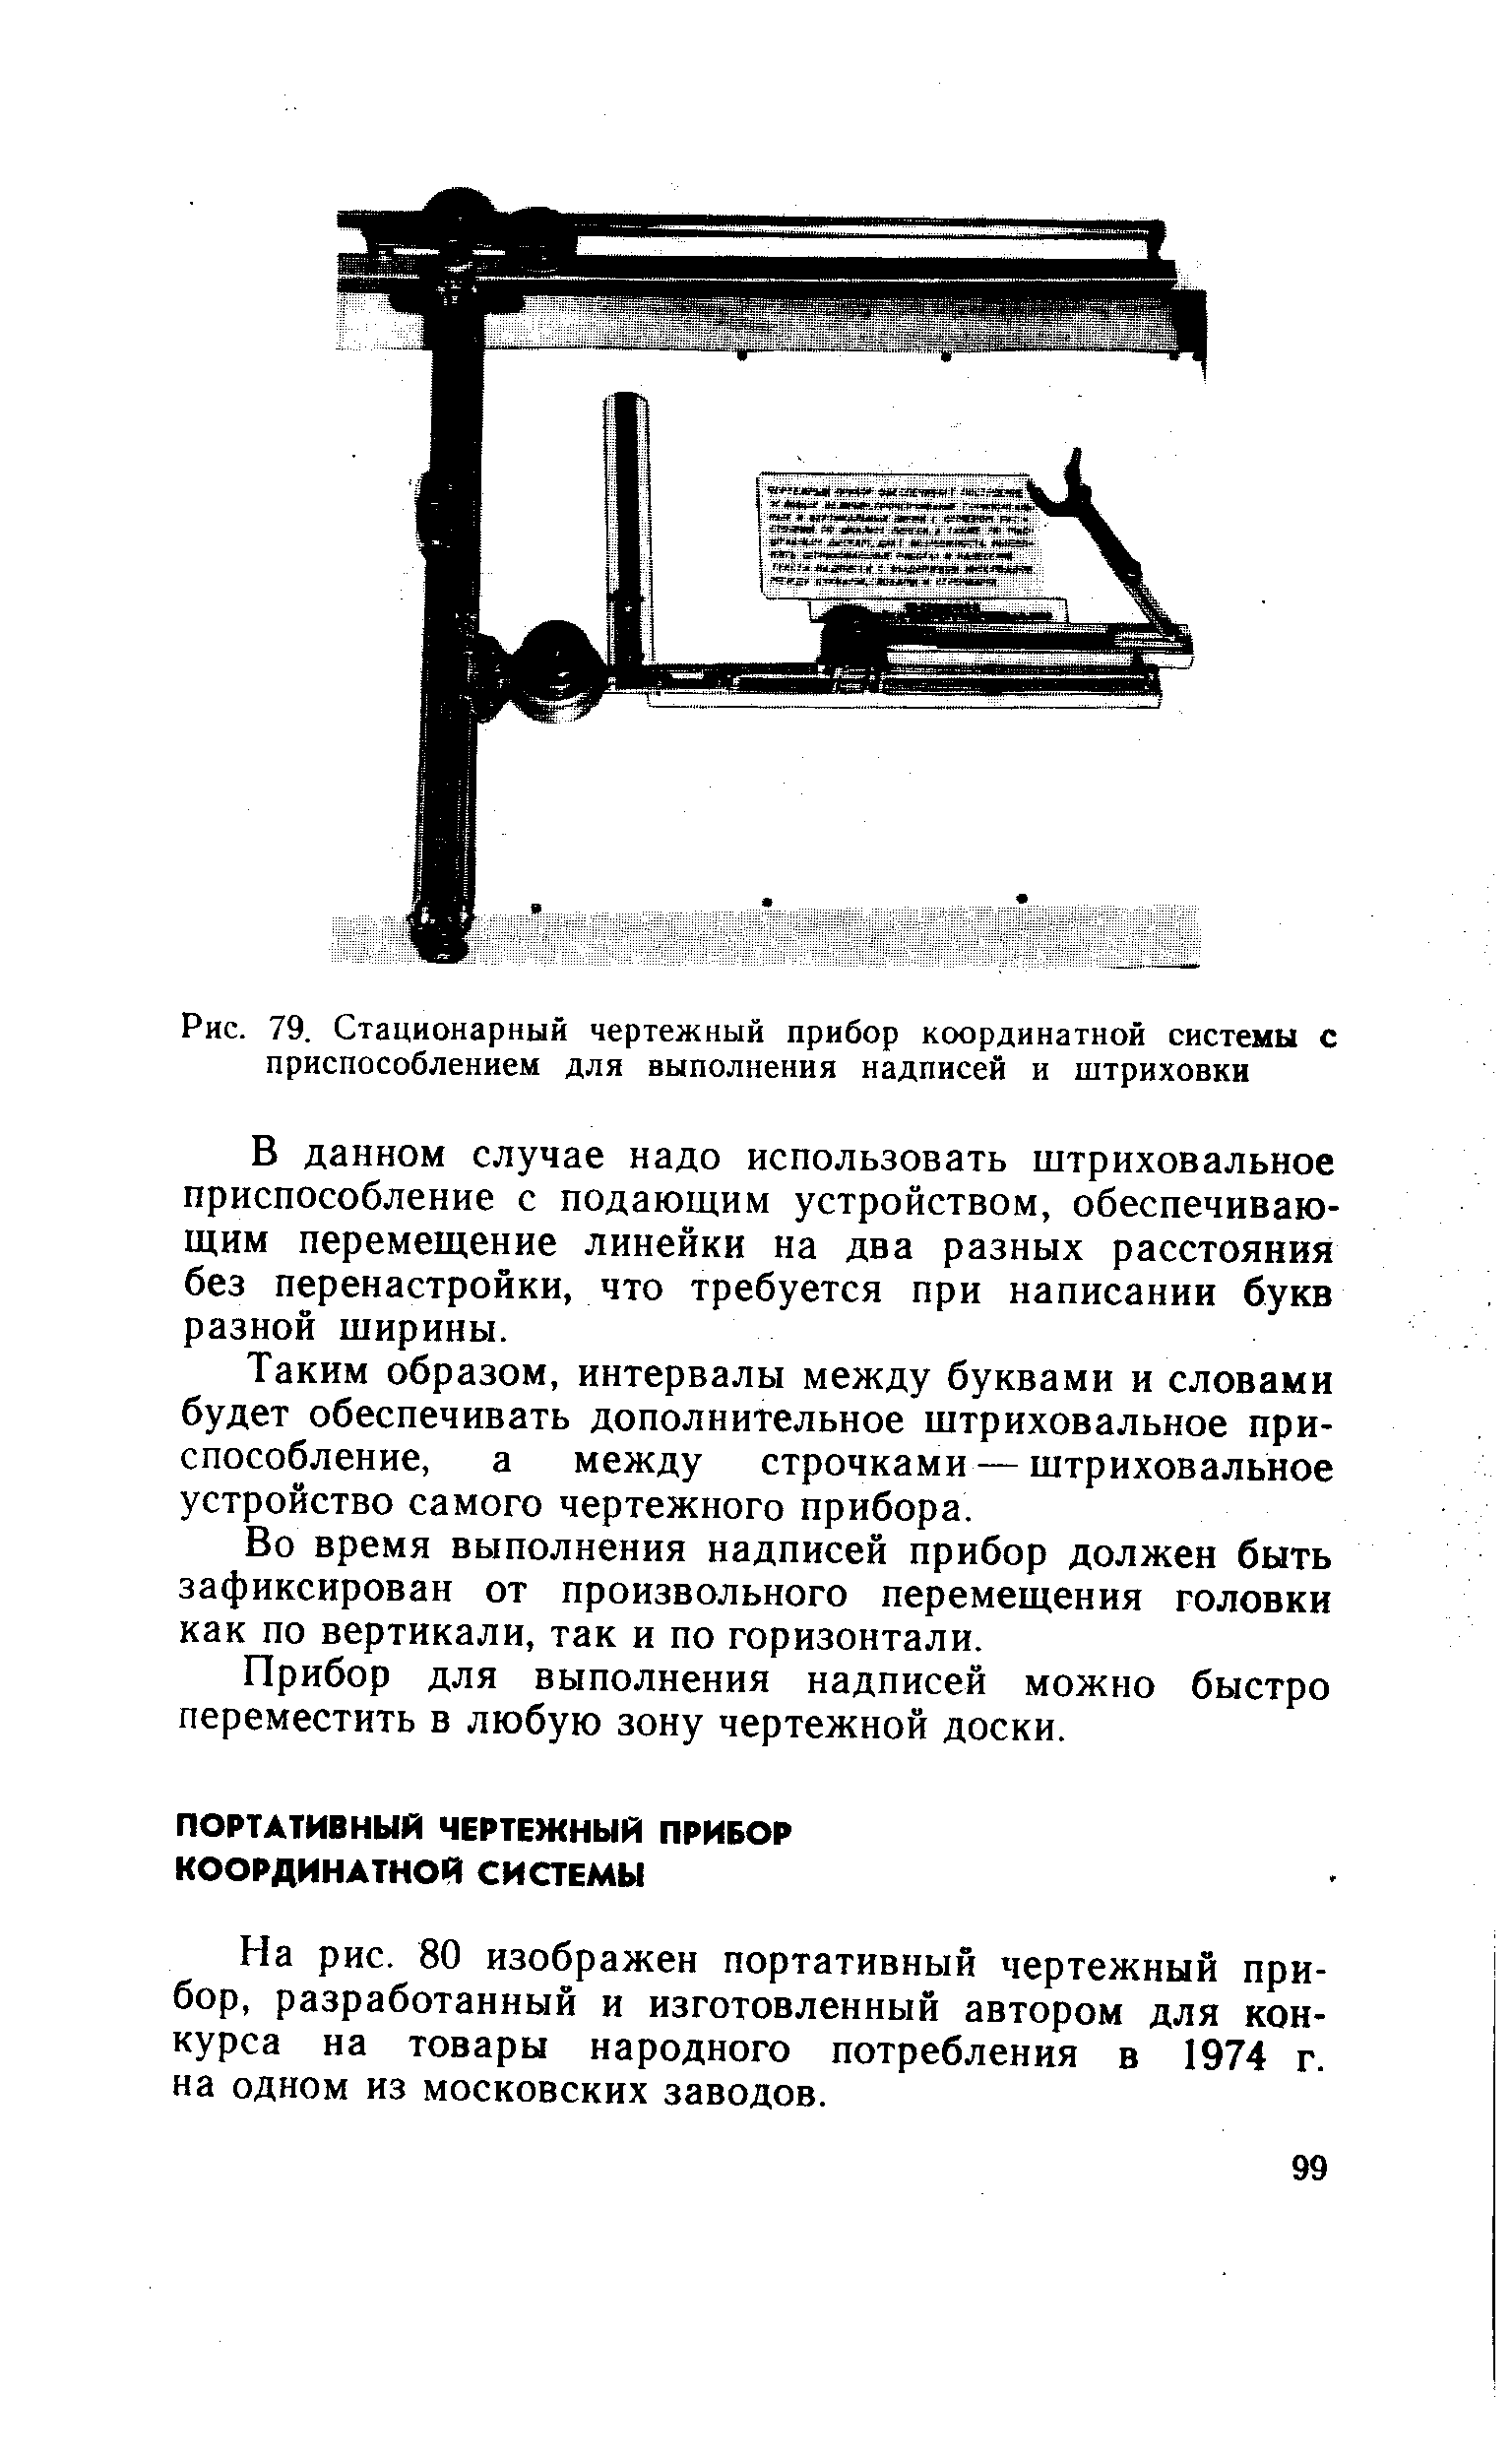 На рис. 80 изображен портативный чертежный прибор, разработанный и изготовленный автором для конкурса на товары народного потребления в 1974 г. на одном из московских заводов.
